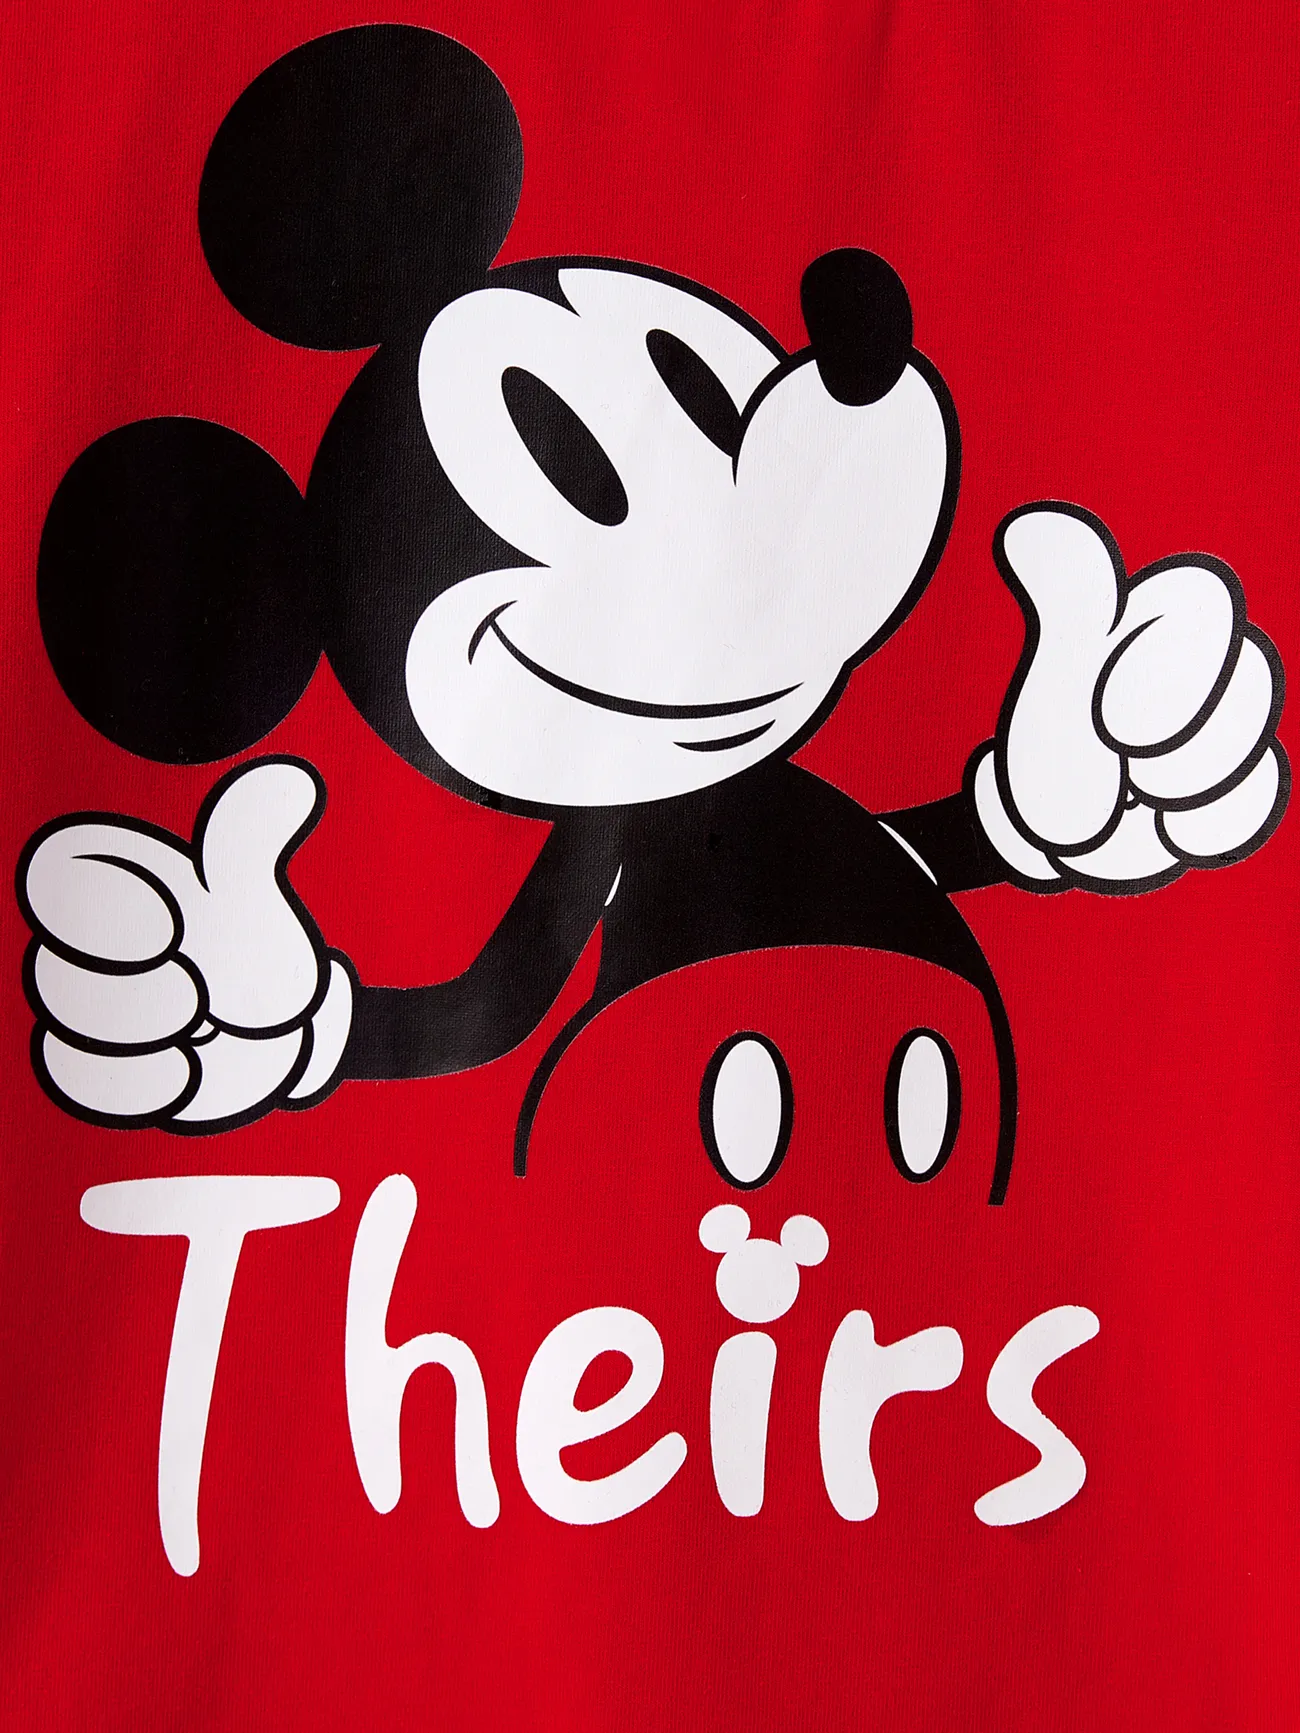 Disney Mickey and Friends Día de la Madre Looks familiares Manga corta Conjuntos combinados para familia Conjuntos Rojo big image 1